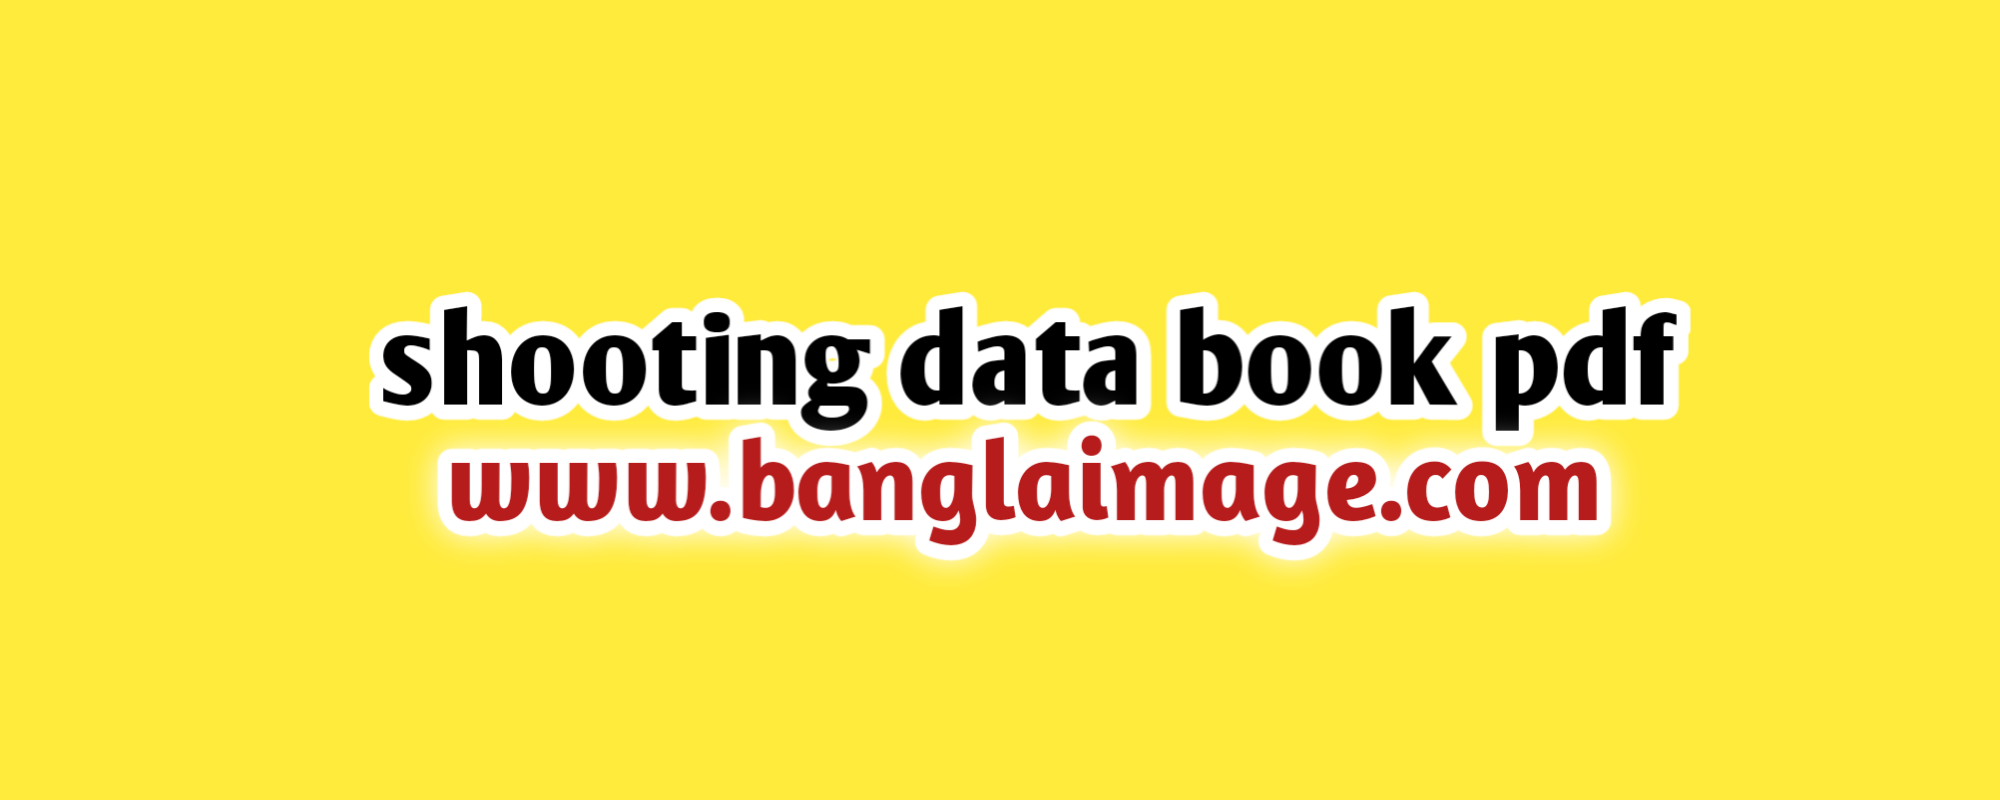 shooting data book pdf, shooting data book pdf drive file, shooting data book pdf now, the shooting data book pdf drive file